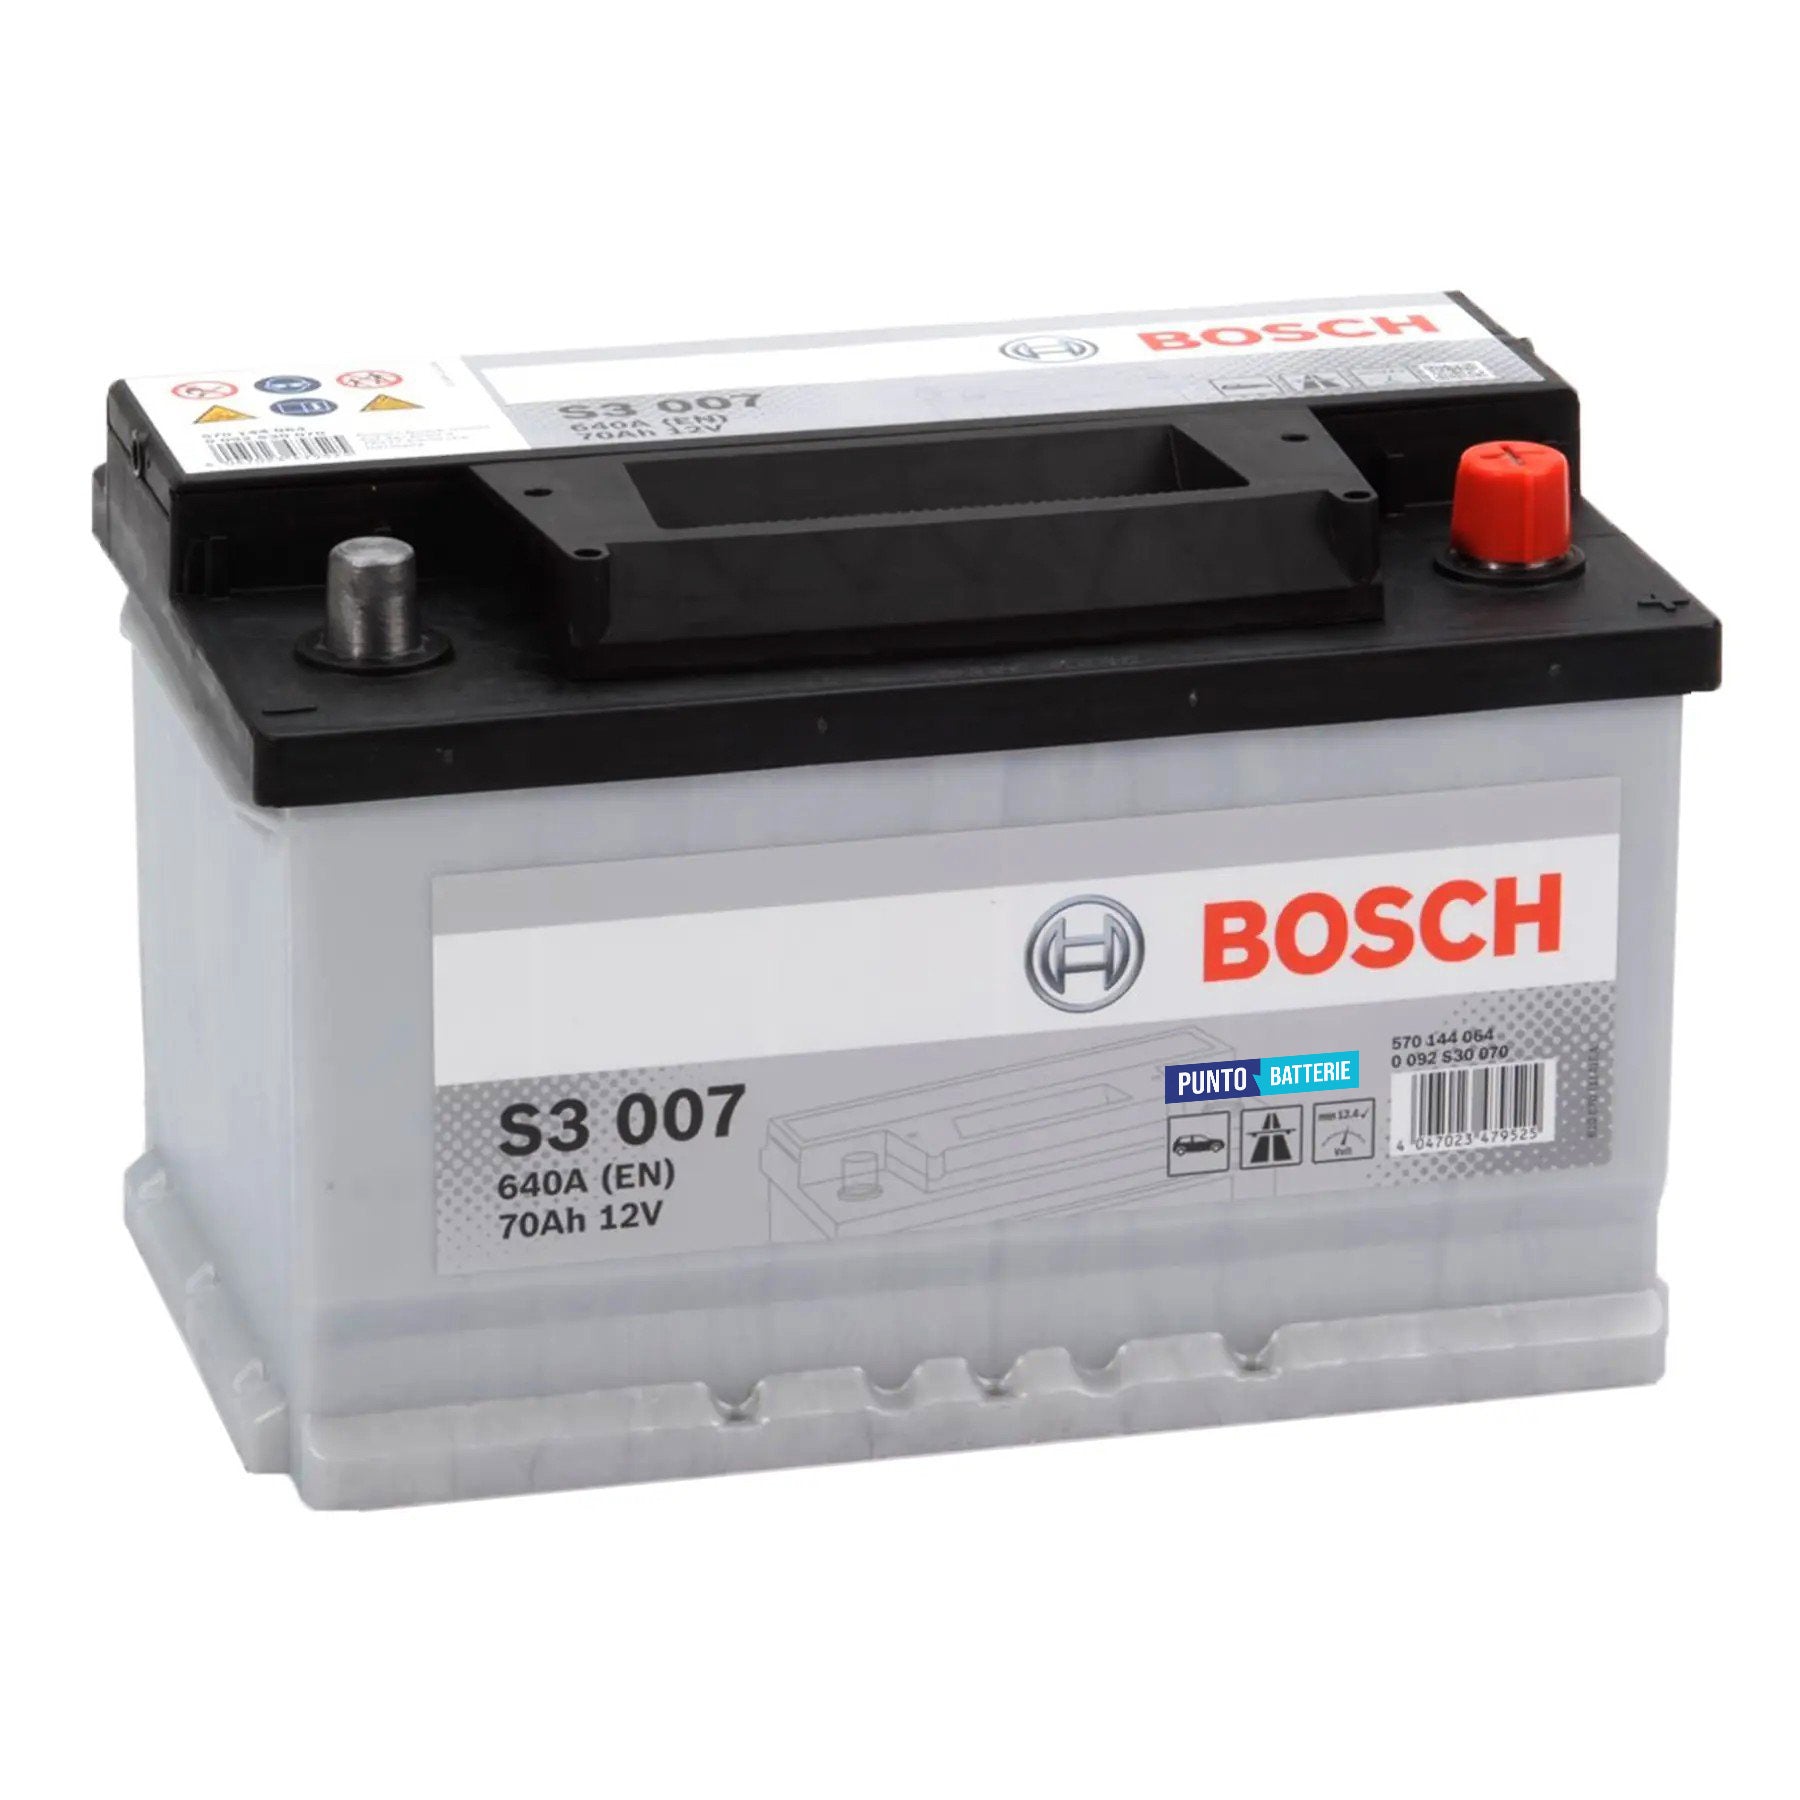 Batteria originale Bosch S3 S3 007, dimensioni 278 x 175 x 175, polo positivo a destra, 12 volt, 70 amperora, 640 ampere. Batteria per auto e veicoli leggeri.